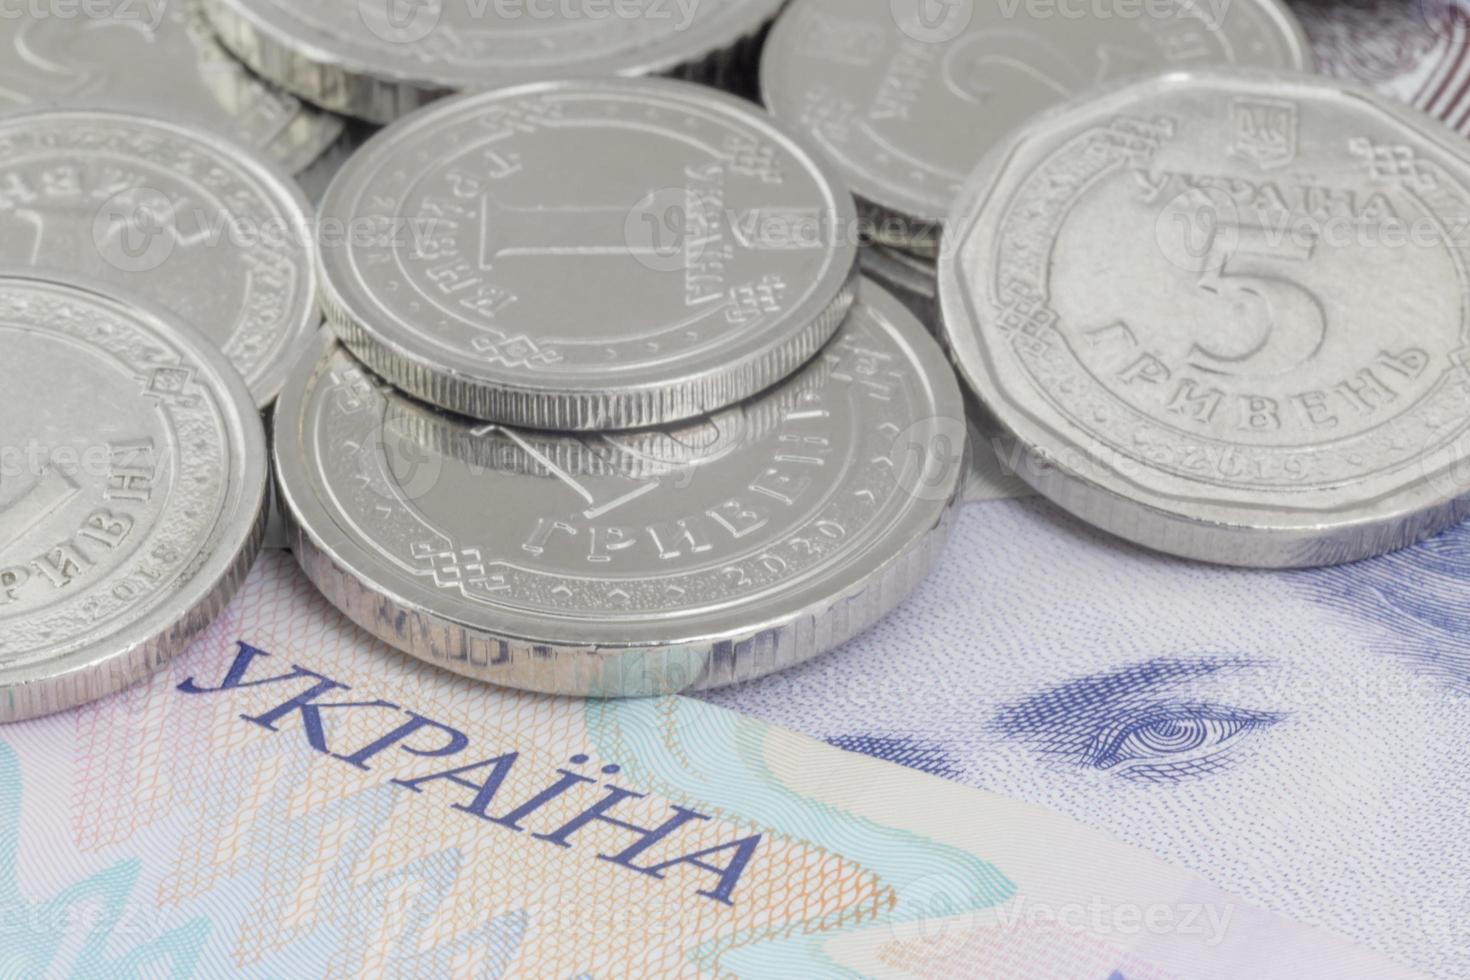 ukrainien hrivnya pièces de monnaie mensonge sur billets de banque photo